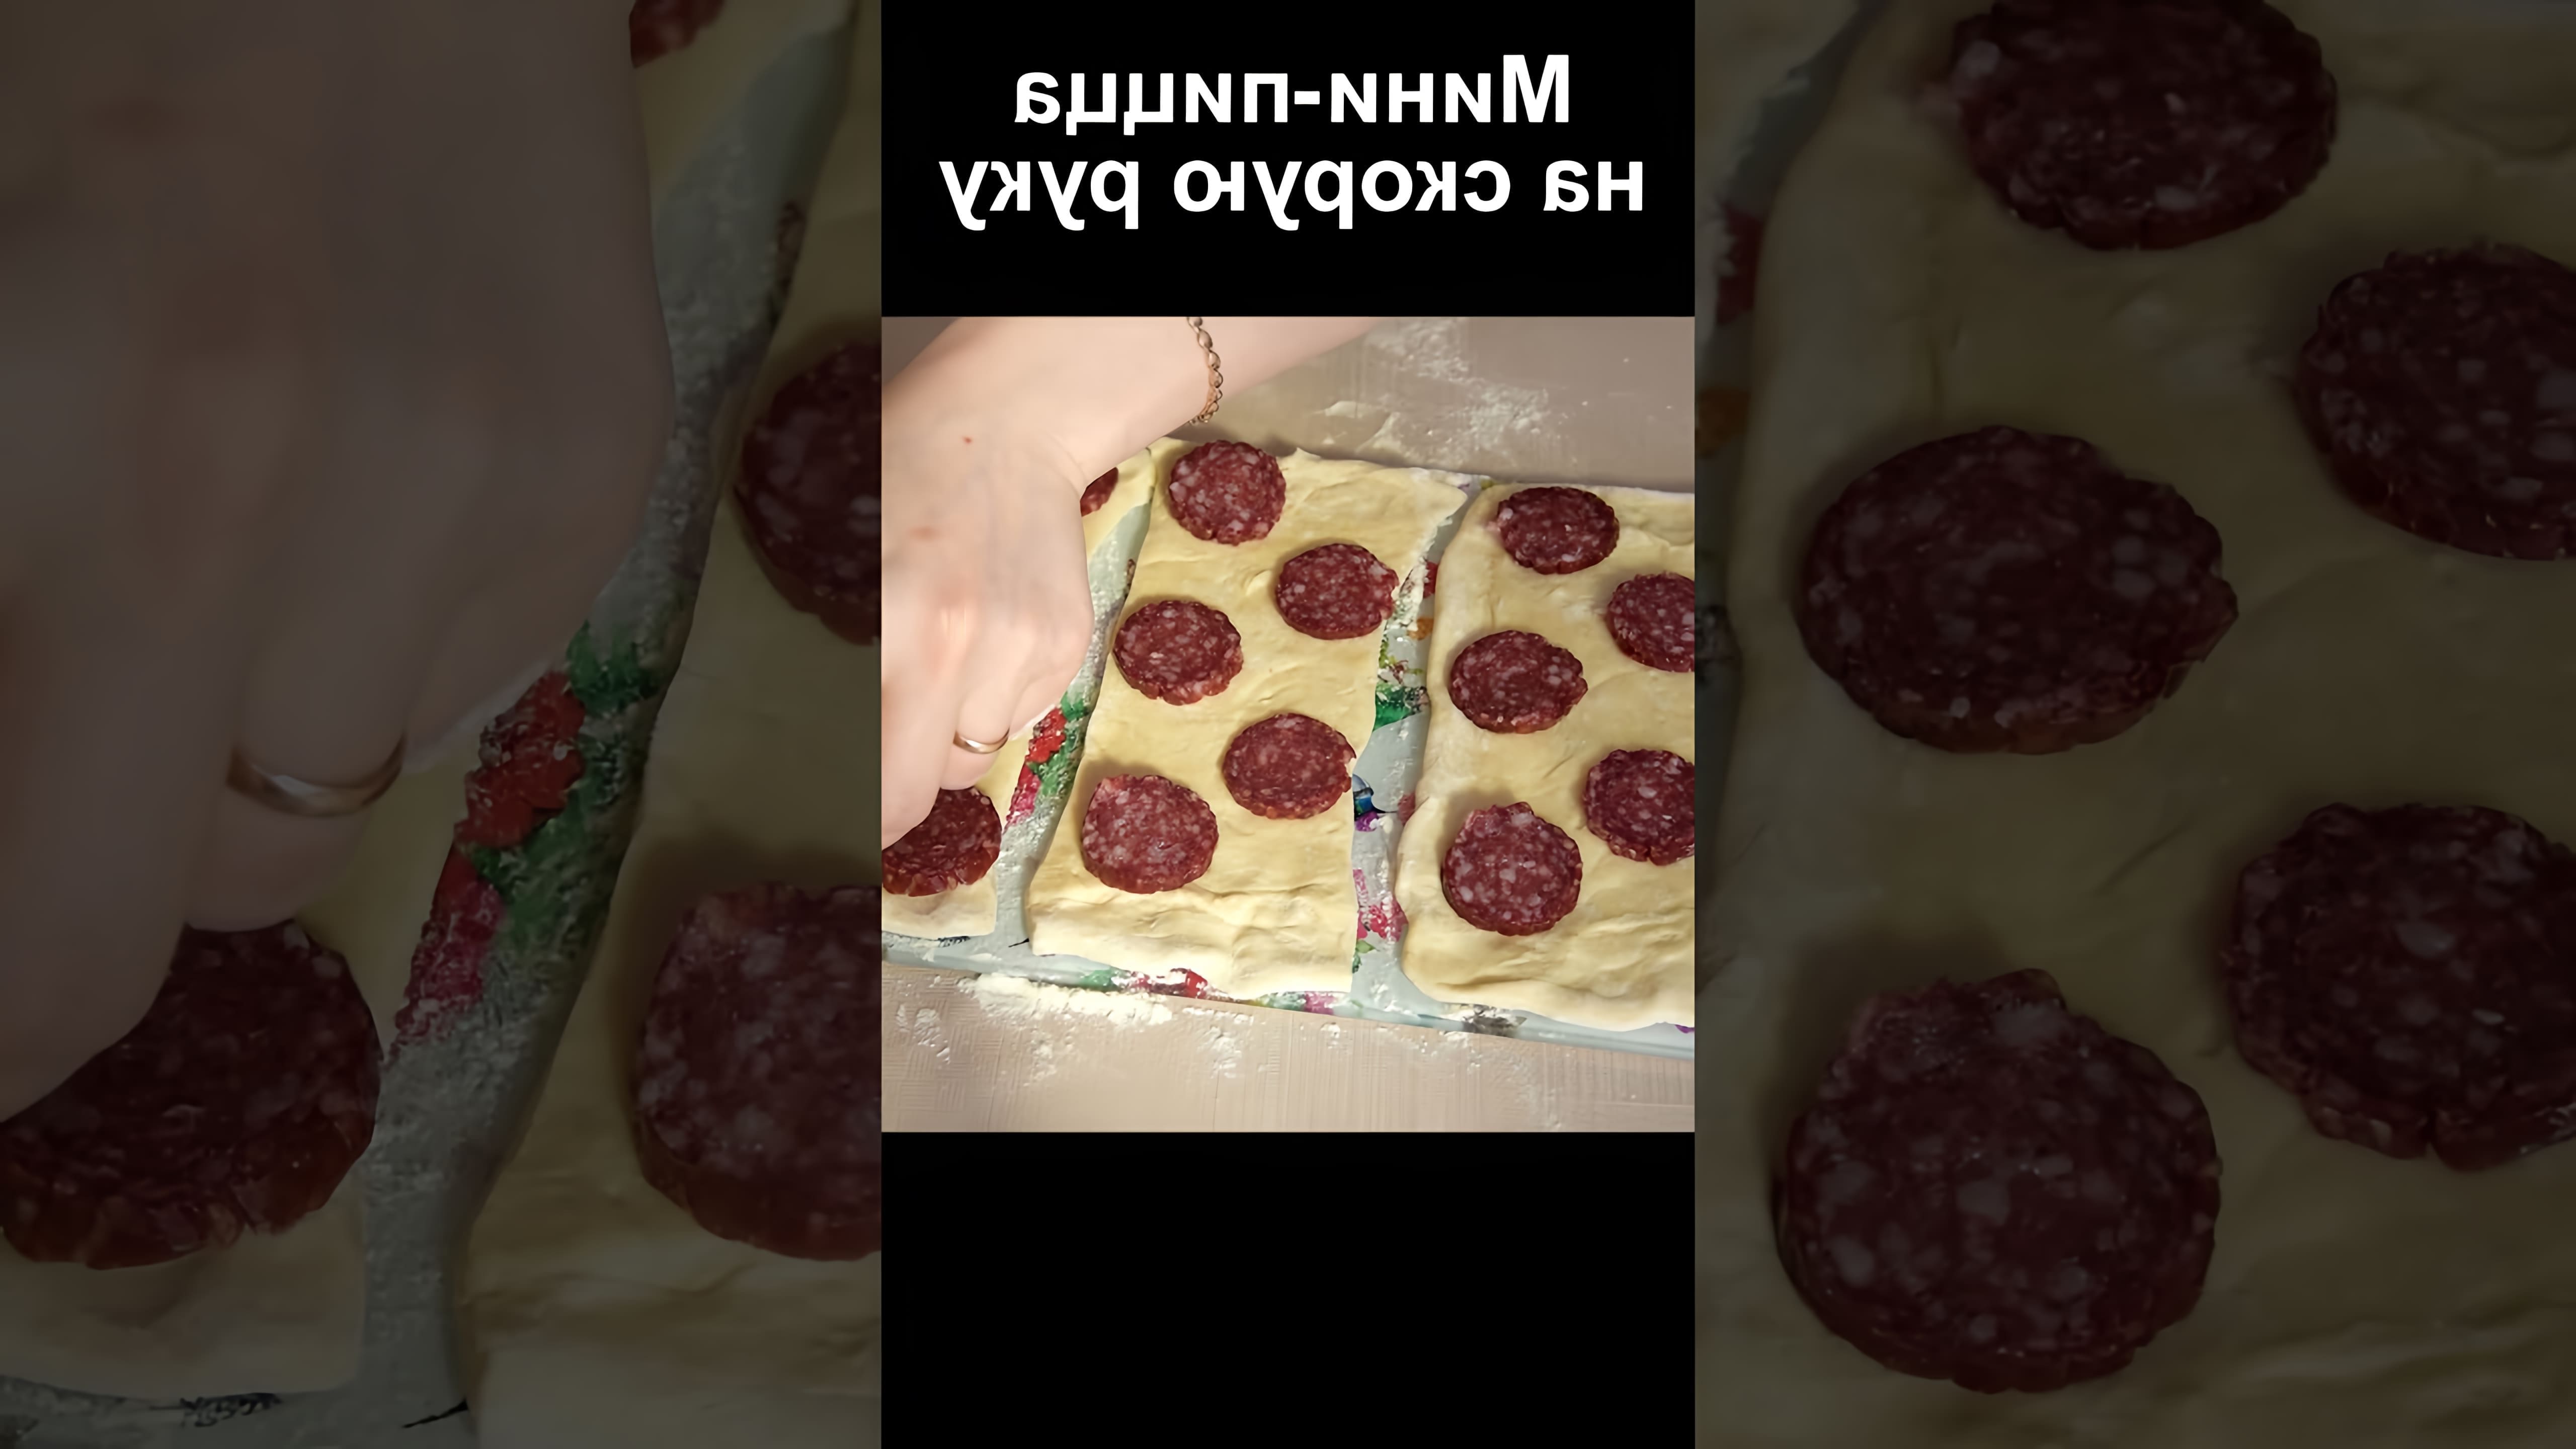 В этом видео демонстрируется процесс приготовления мини-пиццы на скорую руку из слоеного теста